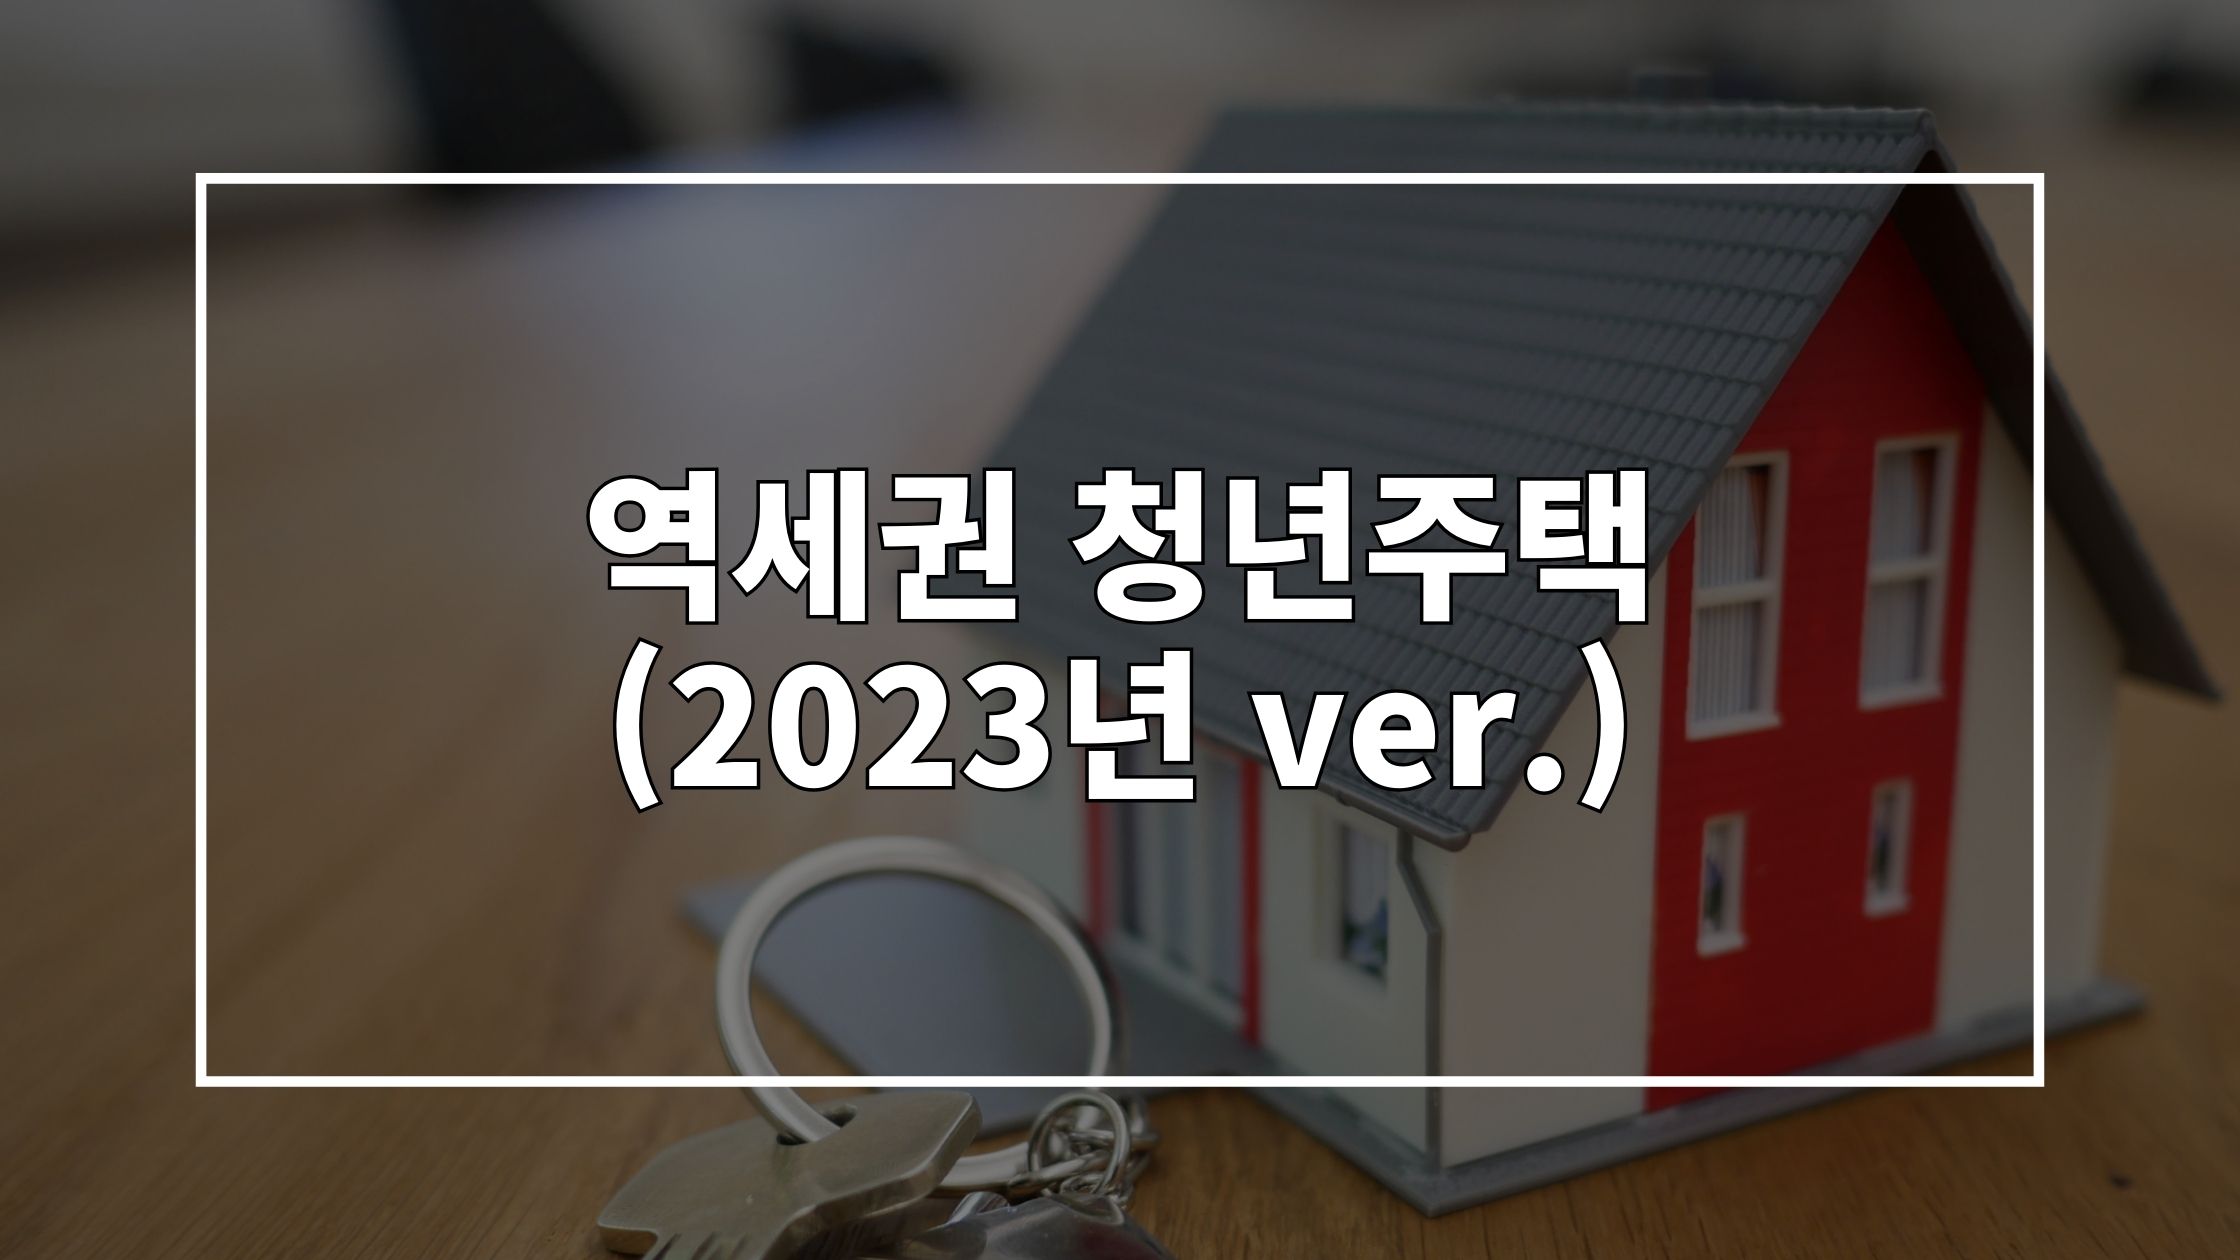 집 모형 사진 위에 '역세권 청년주택 (2023년 ver.)'이라고 쓰여있는 썸네일 이미지입니다.